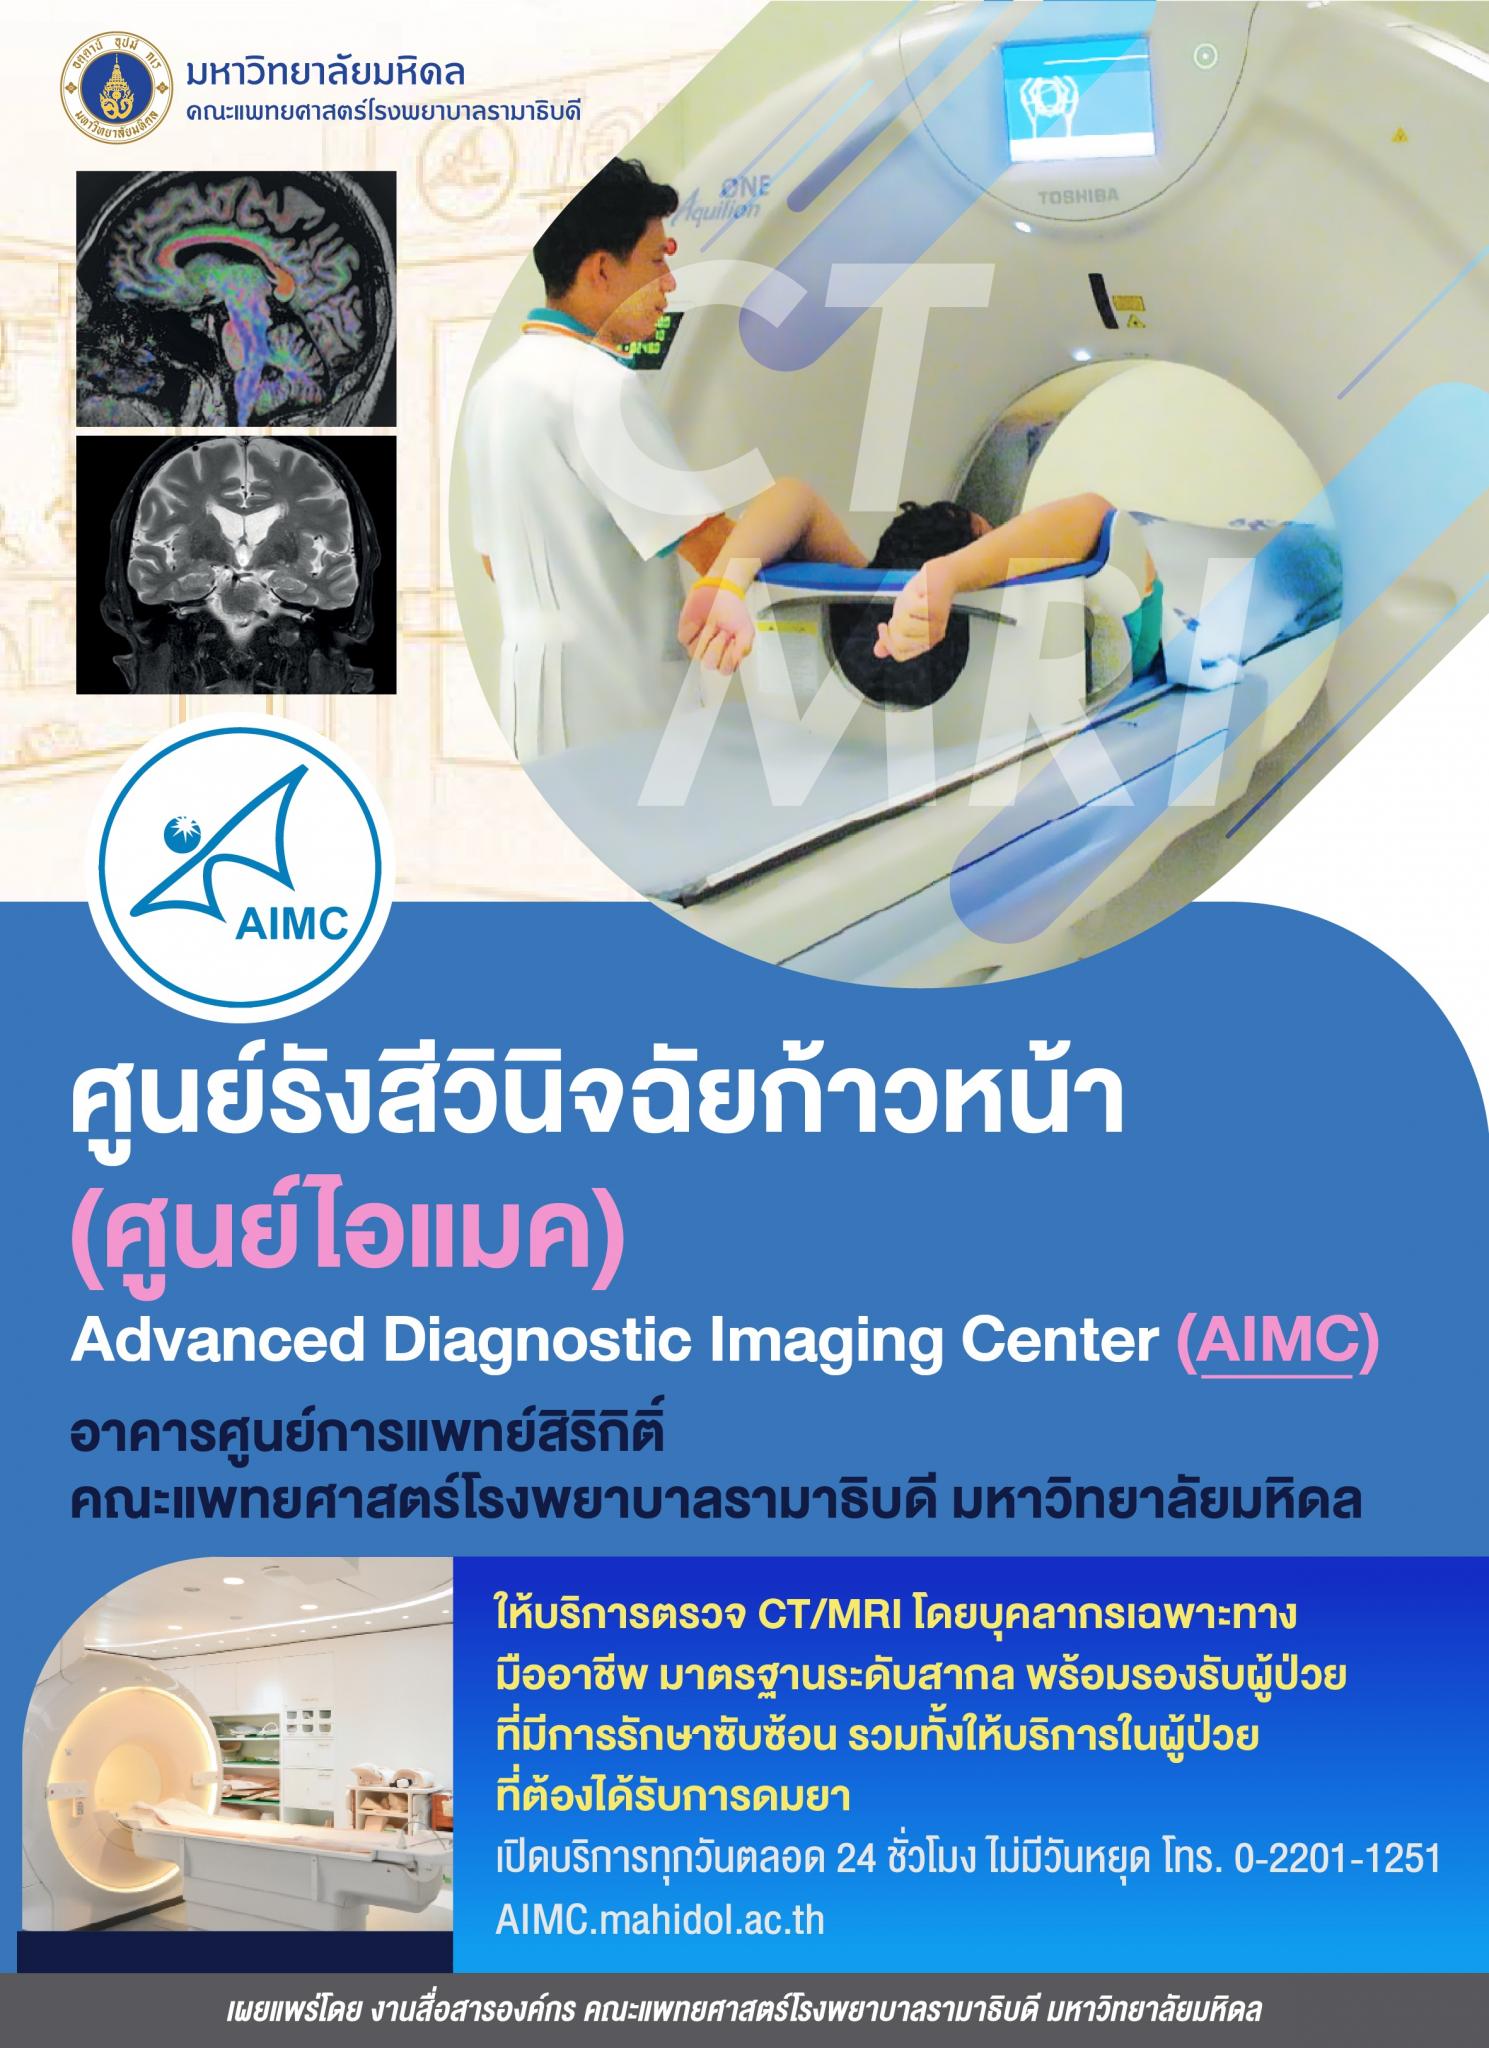 ศูนย์รังสีวินิจฉัยก้าวหน้า (ศูนย์ไอแมค) อาคารศูนย์การแพทย์สิริกิติ์ ให้บริการตรวจ CT/MRI 